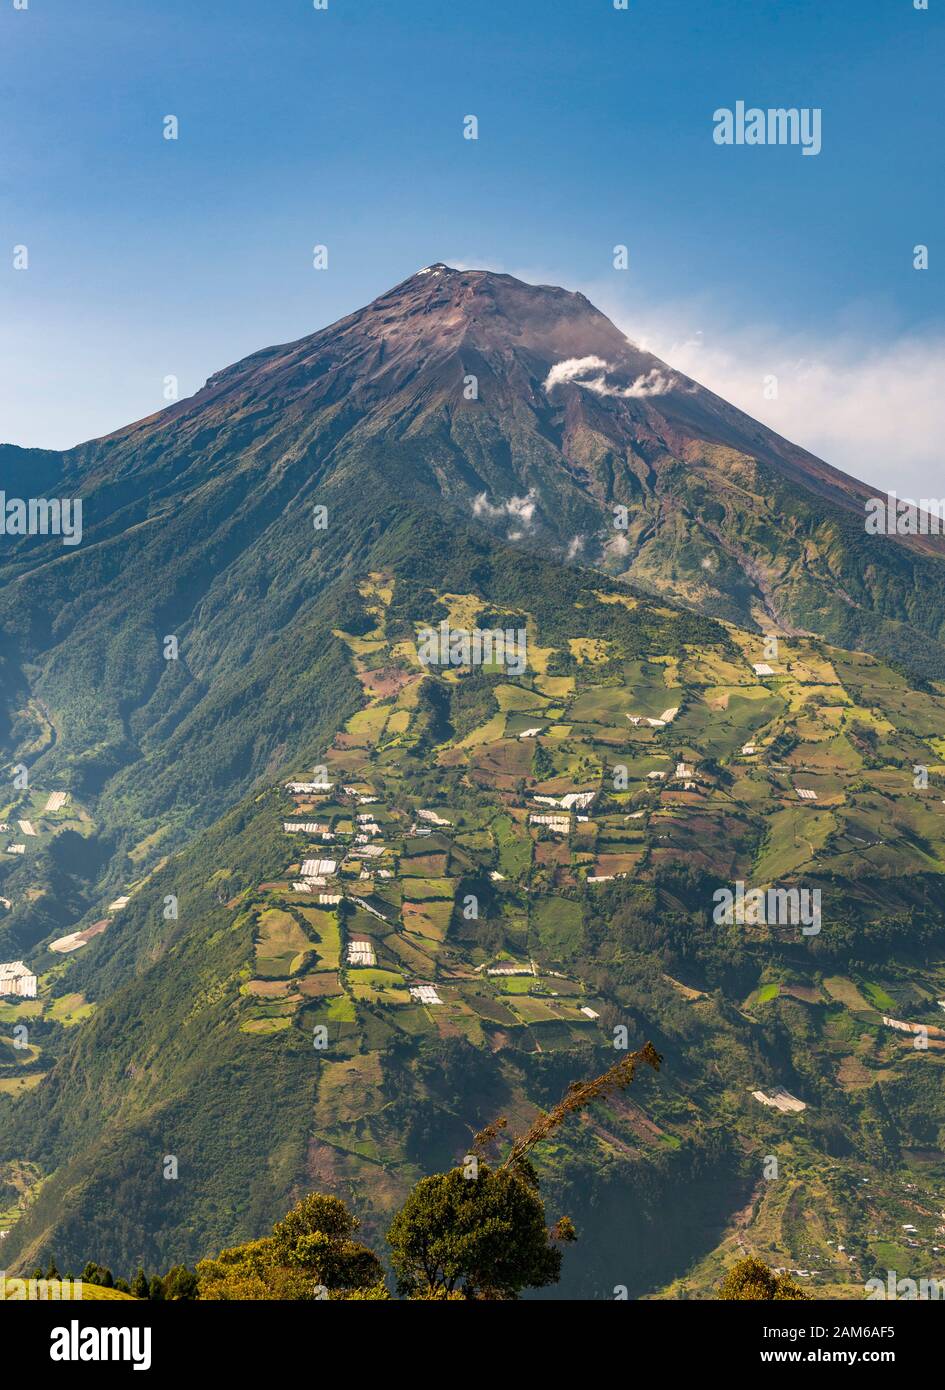 Tungurahua volcano (5023m) near the town of Baños in Ecuador. Stock Photo